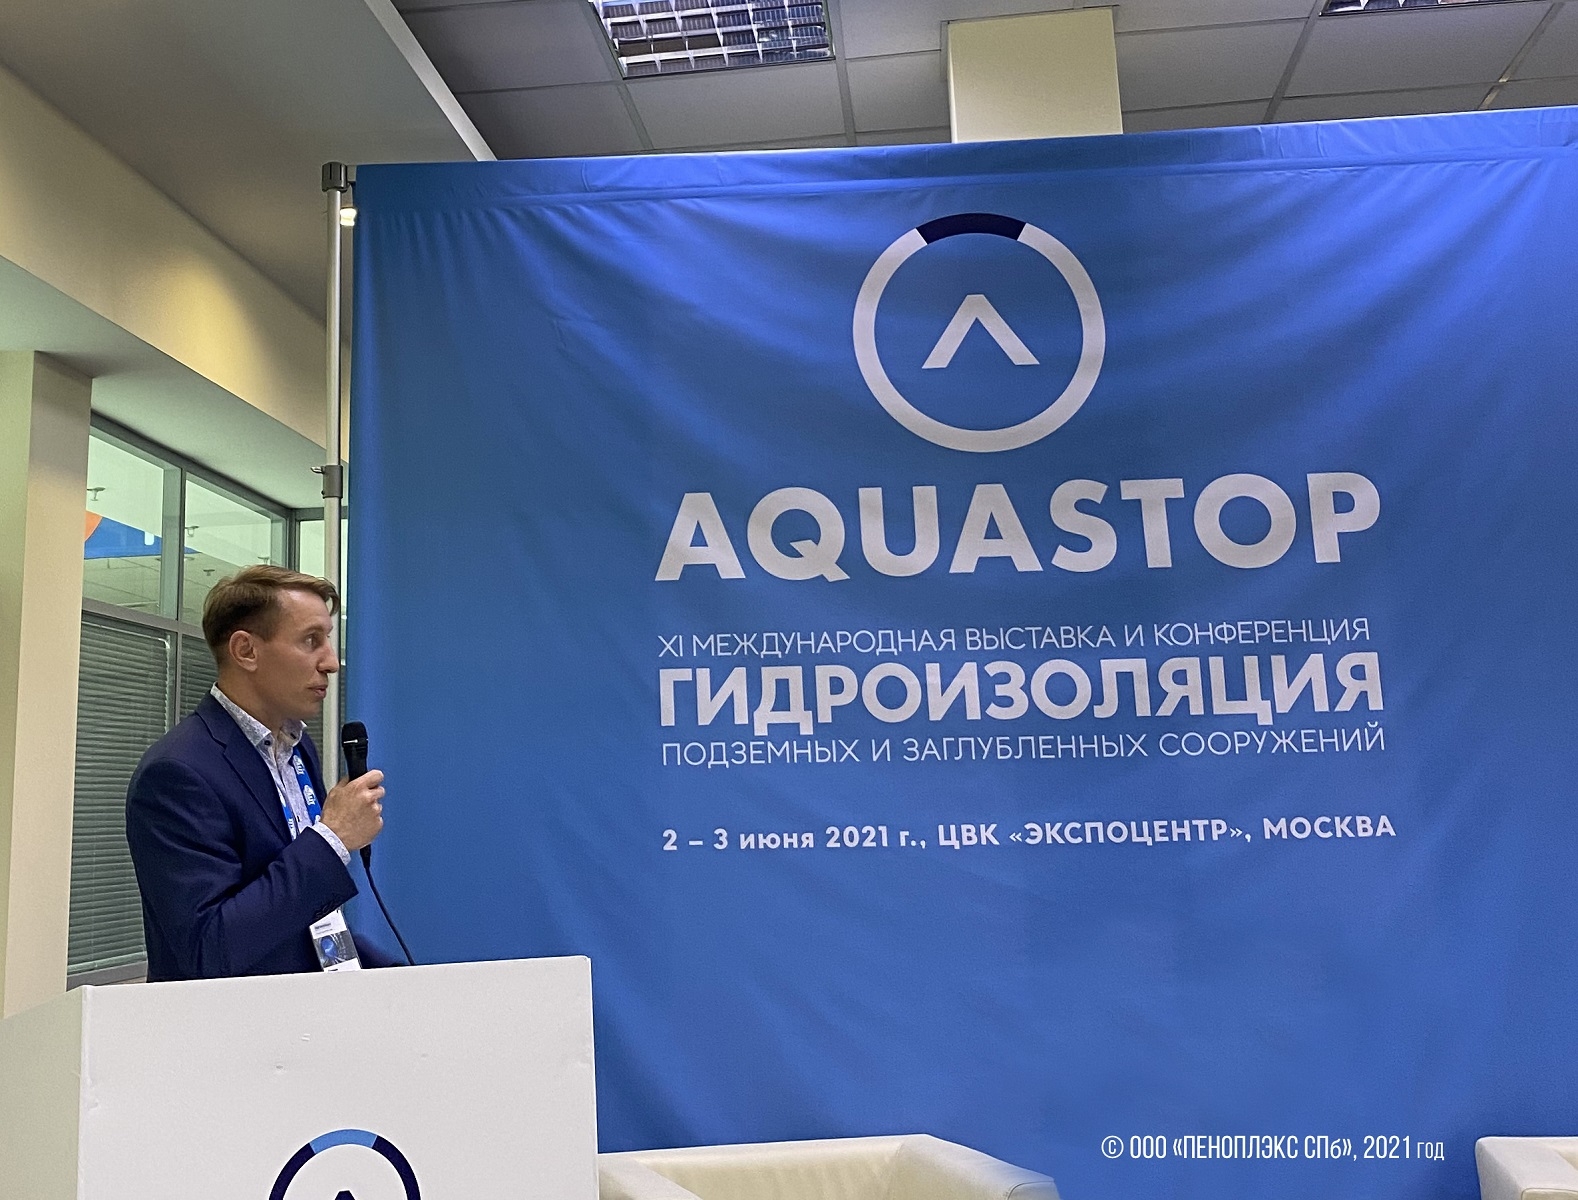 Конференция Aquastop-2021